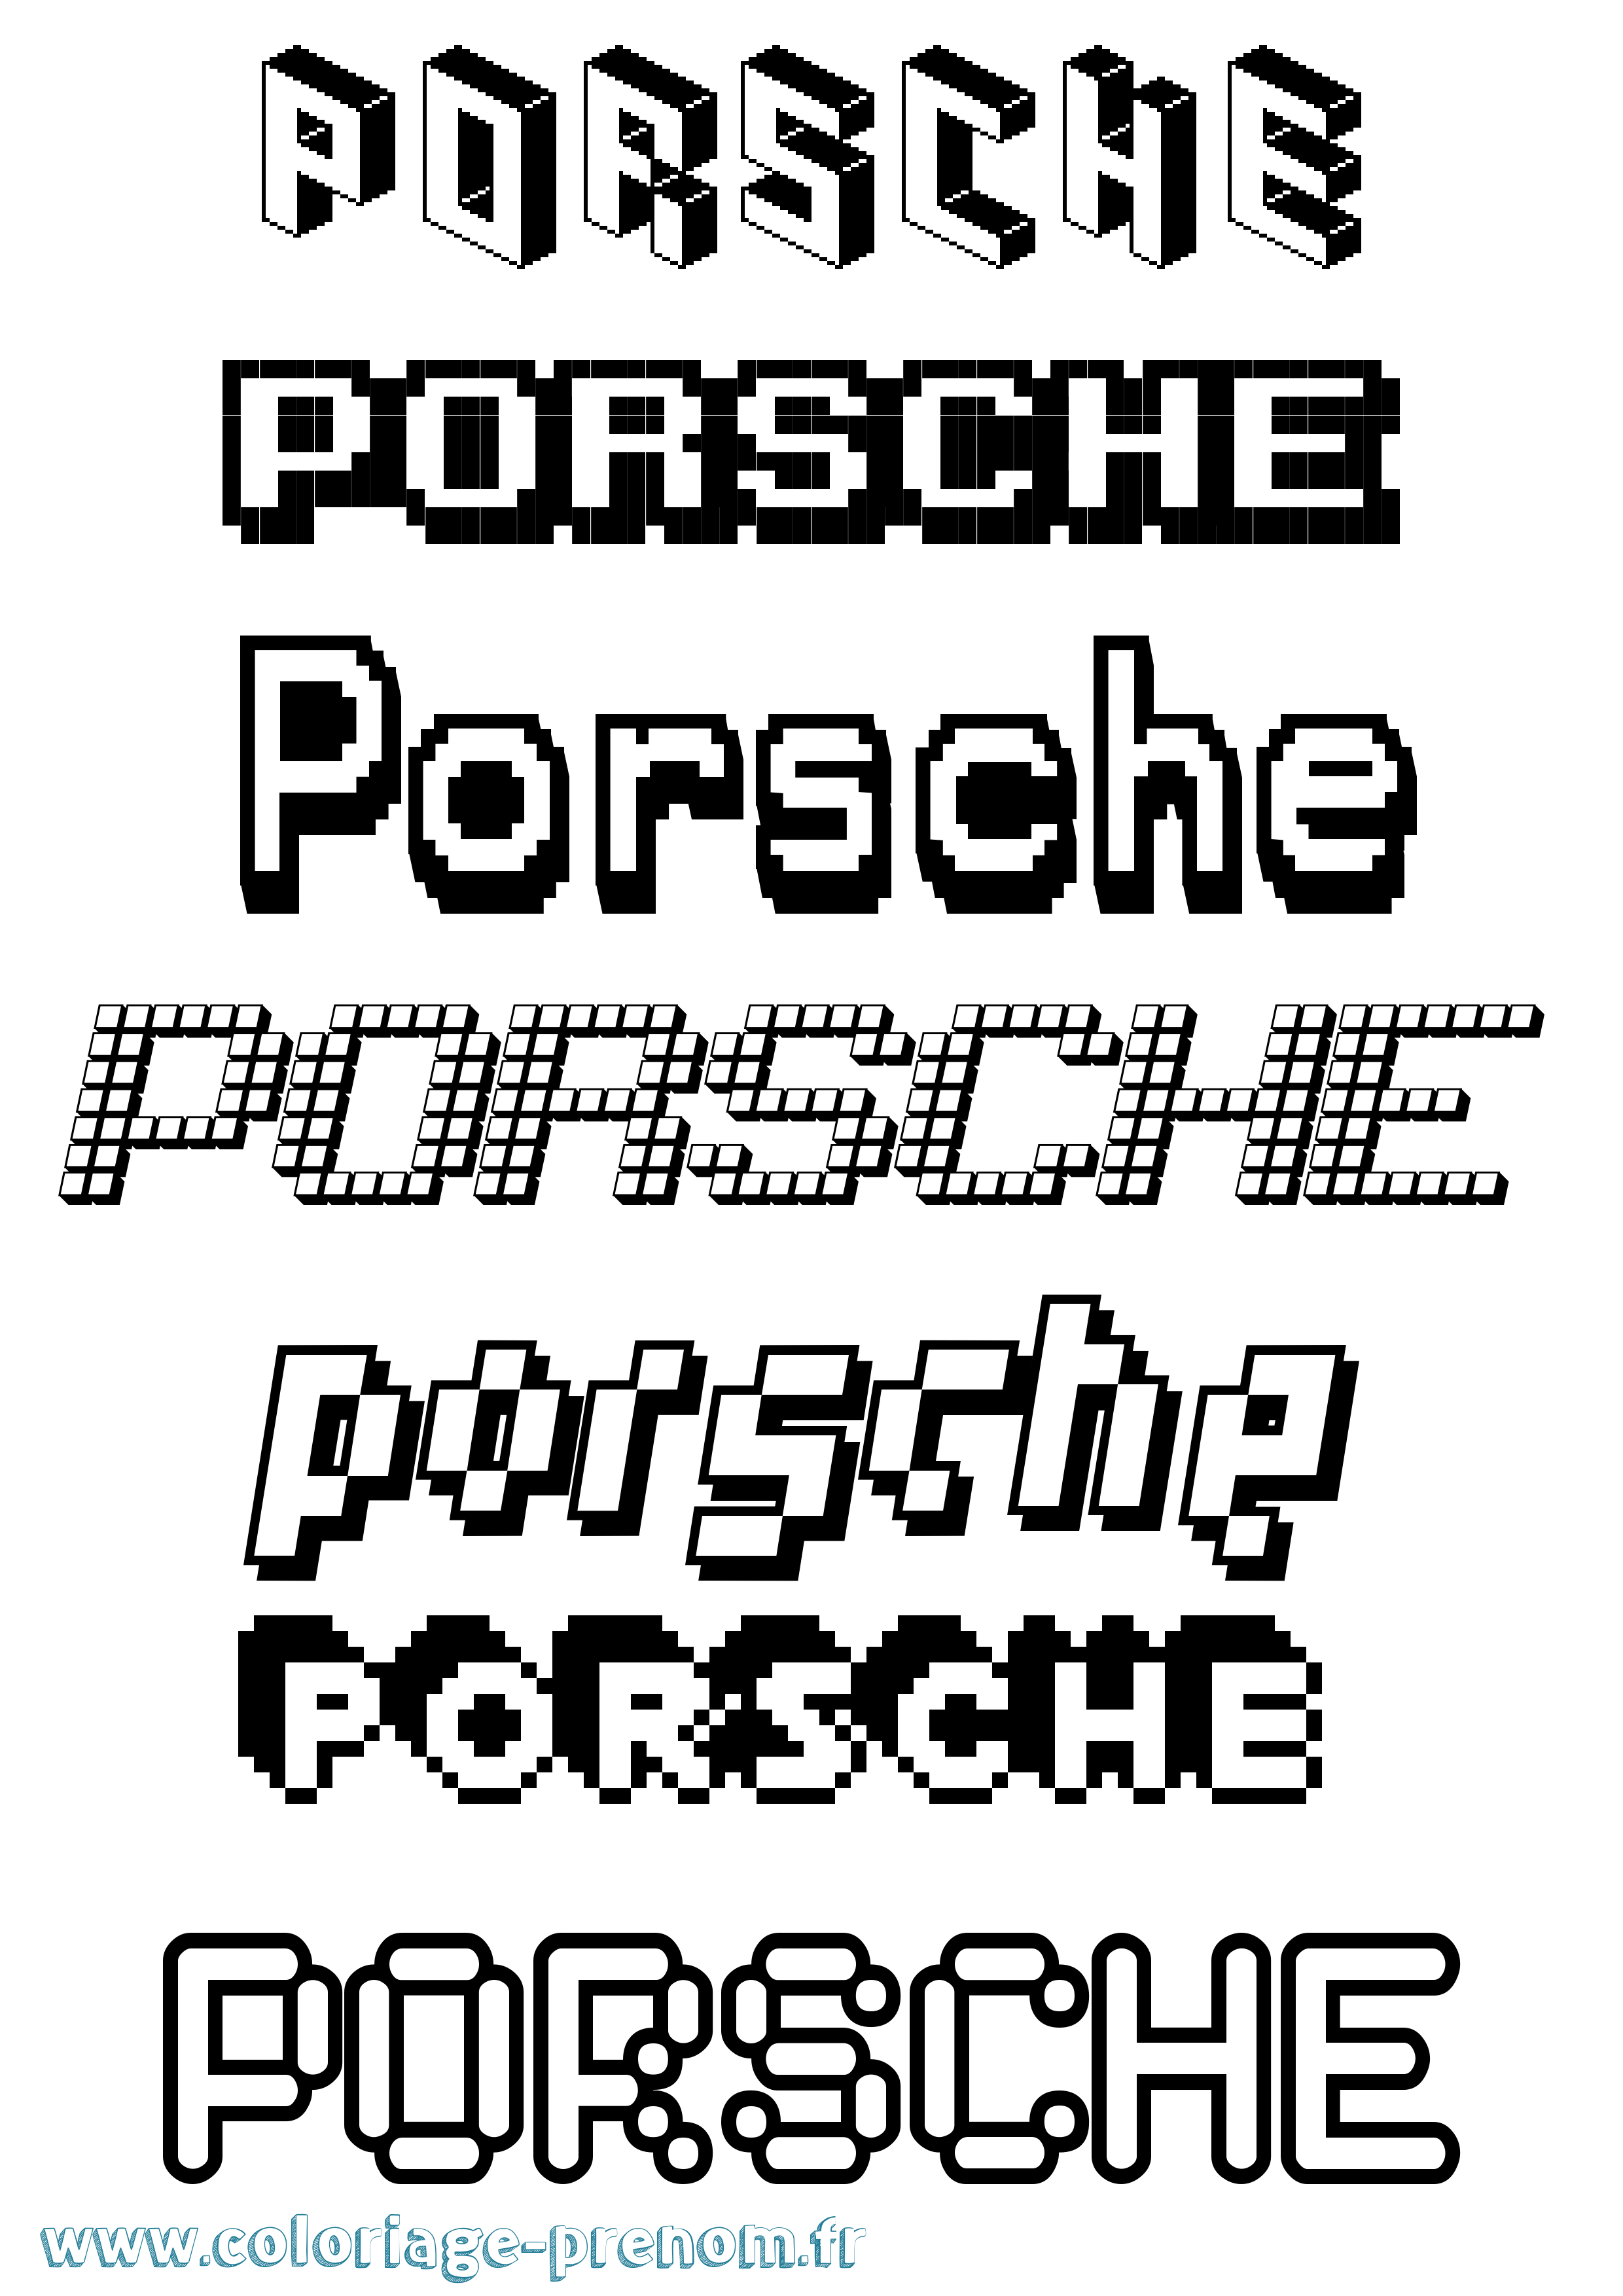 Coloriage prénom Porsche Pixel